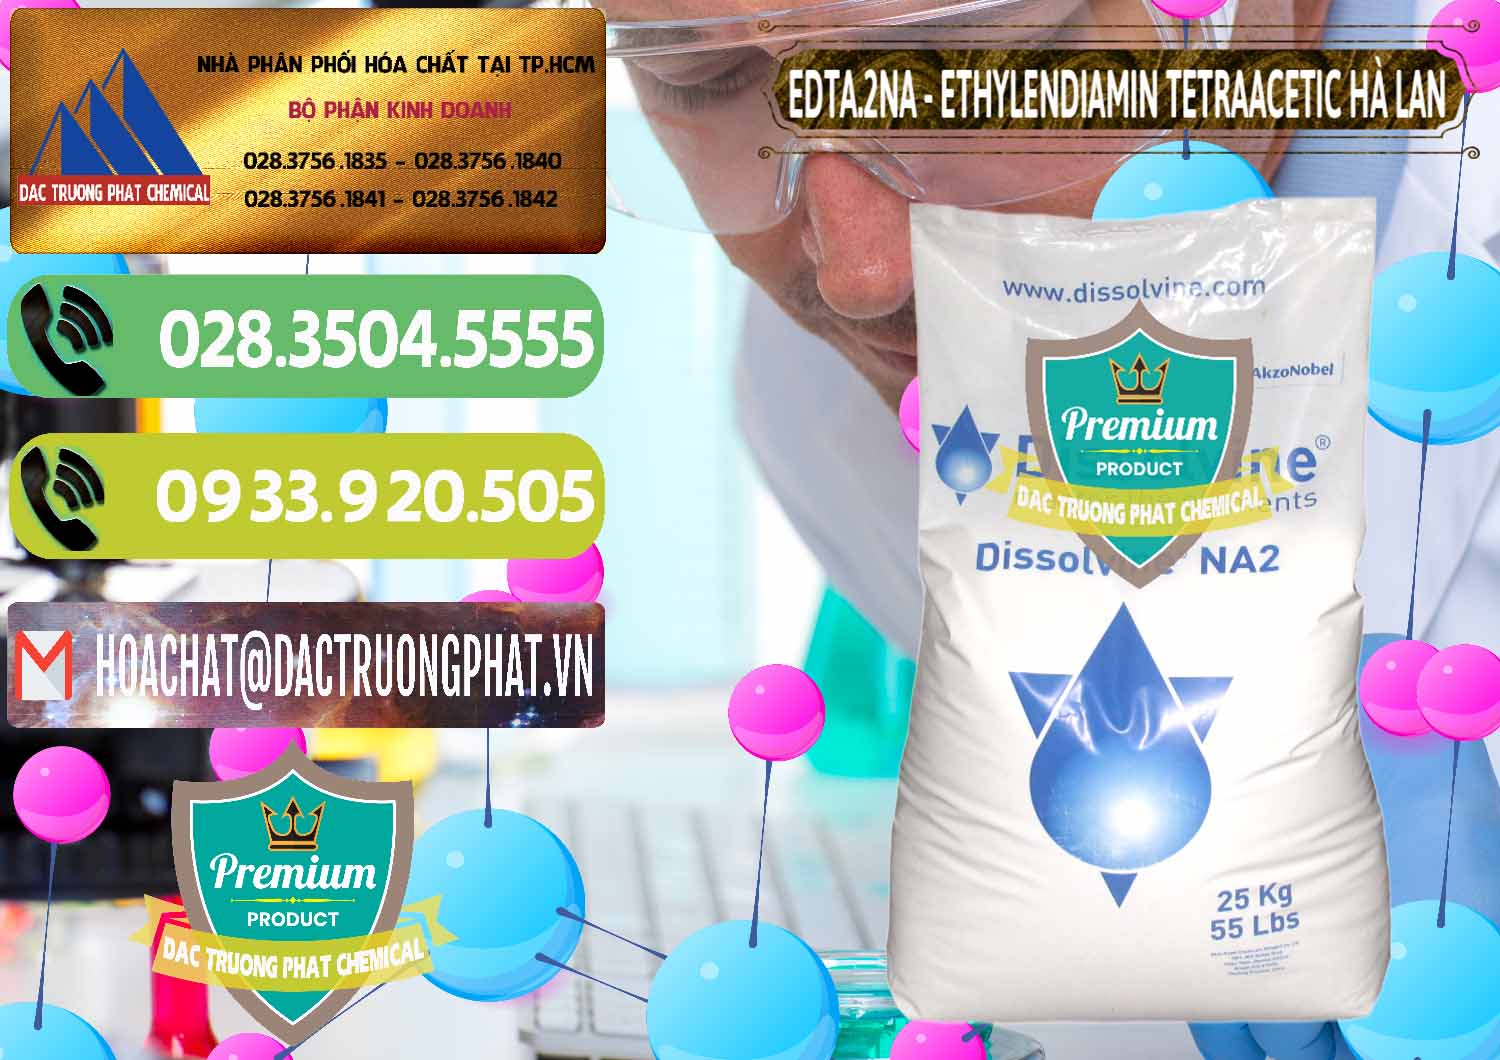 Cty chuyên kinh doanh - bán EDTA.2NA - Ethylendiamin Tetraacetic Dissolvine Hà Lan Netherlands - 0064 - Nơi chuyên cung cấp - nhập khẩu hóa chất tại TP.HCM - hoachatmientay.vn